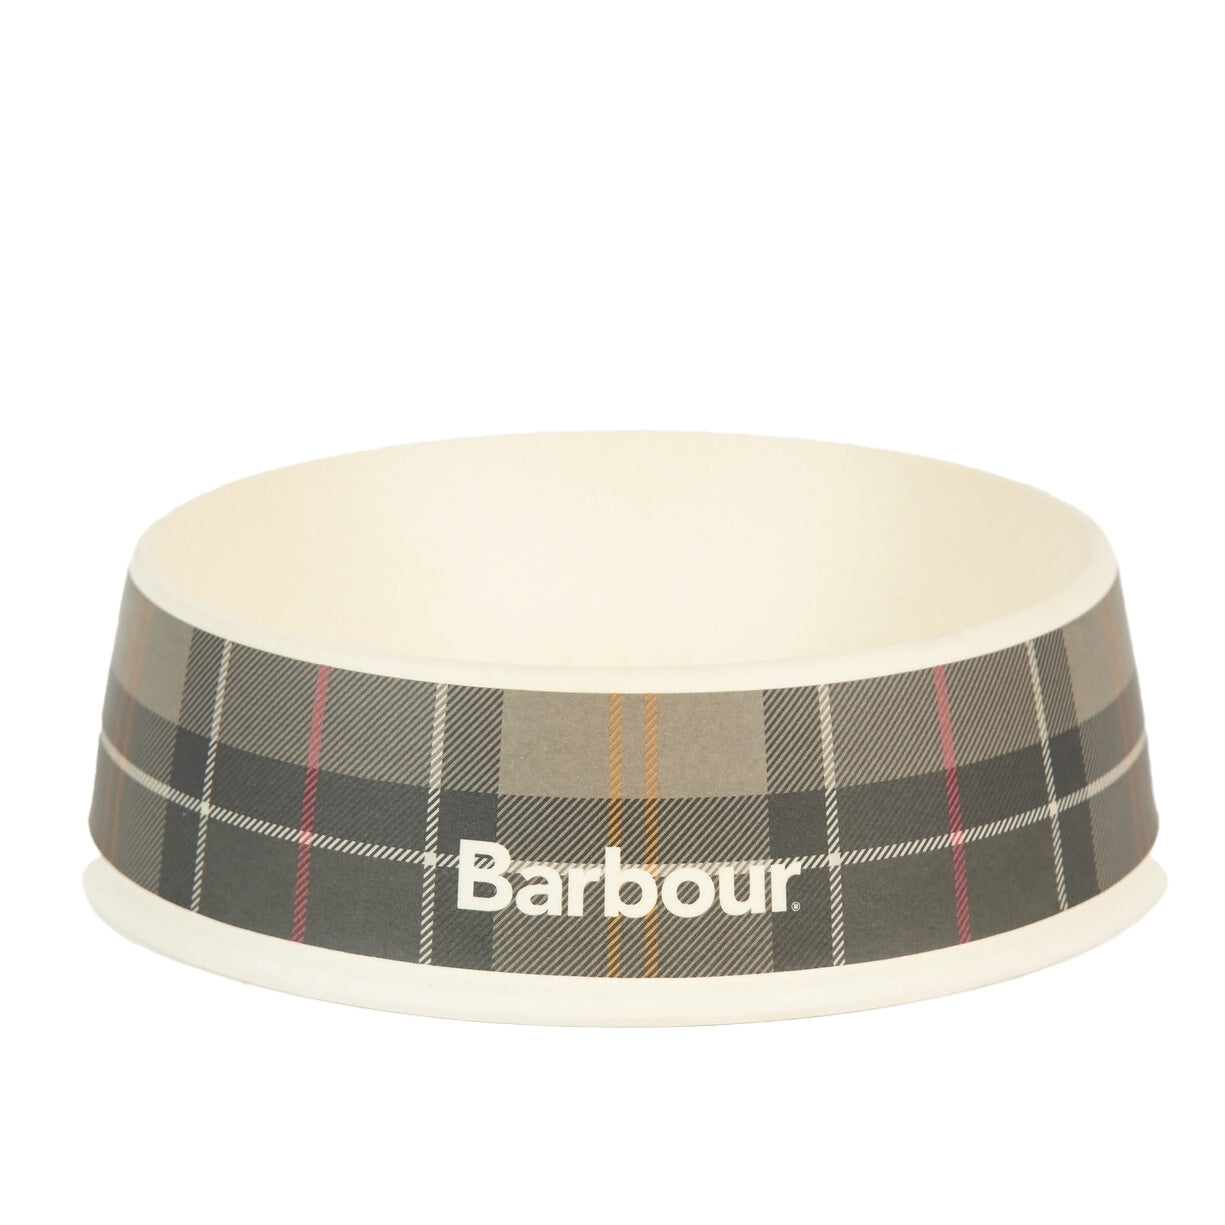 Barbour Tartan Dog Bowl